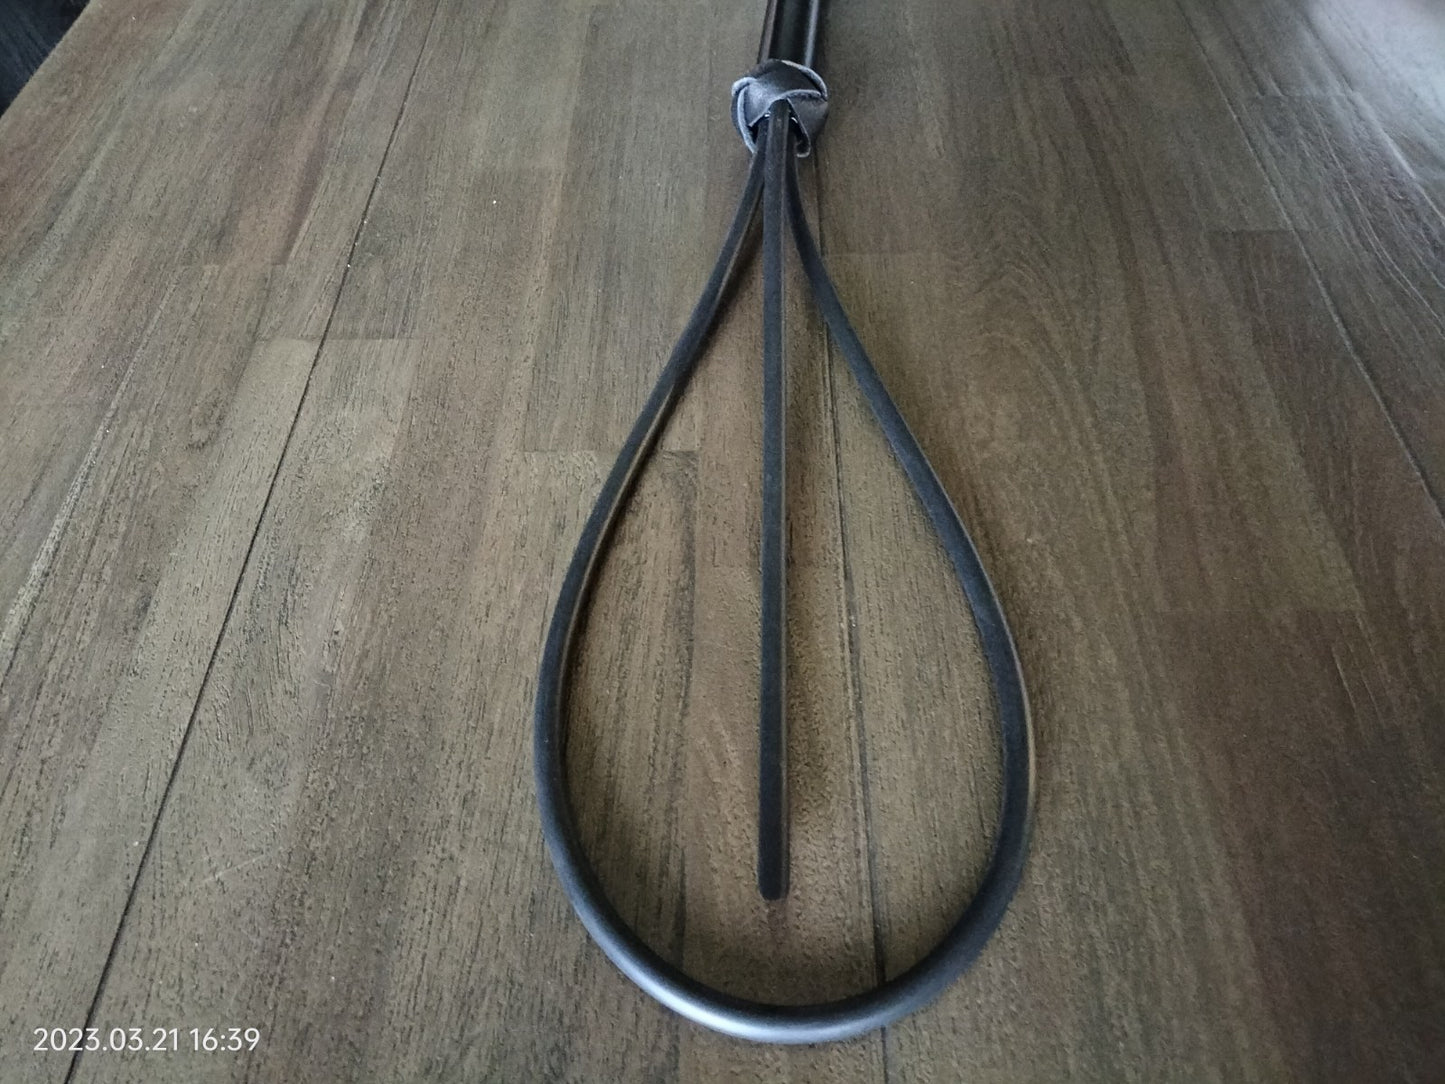 The loop special 60 cm with black metal handle